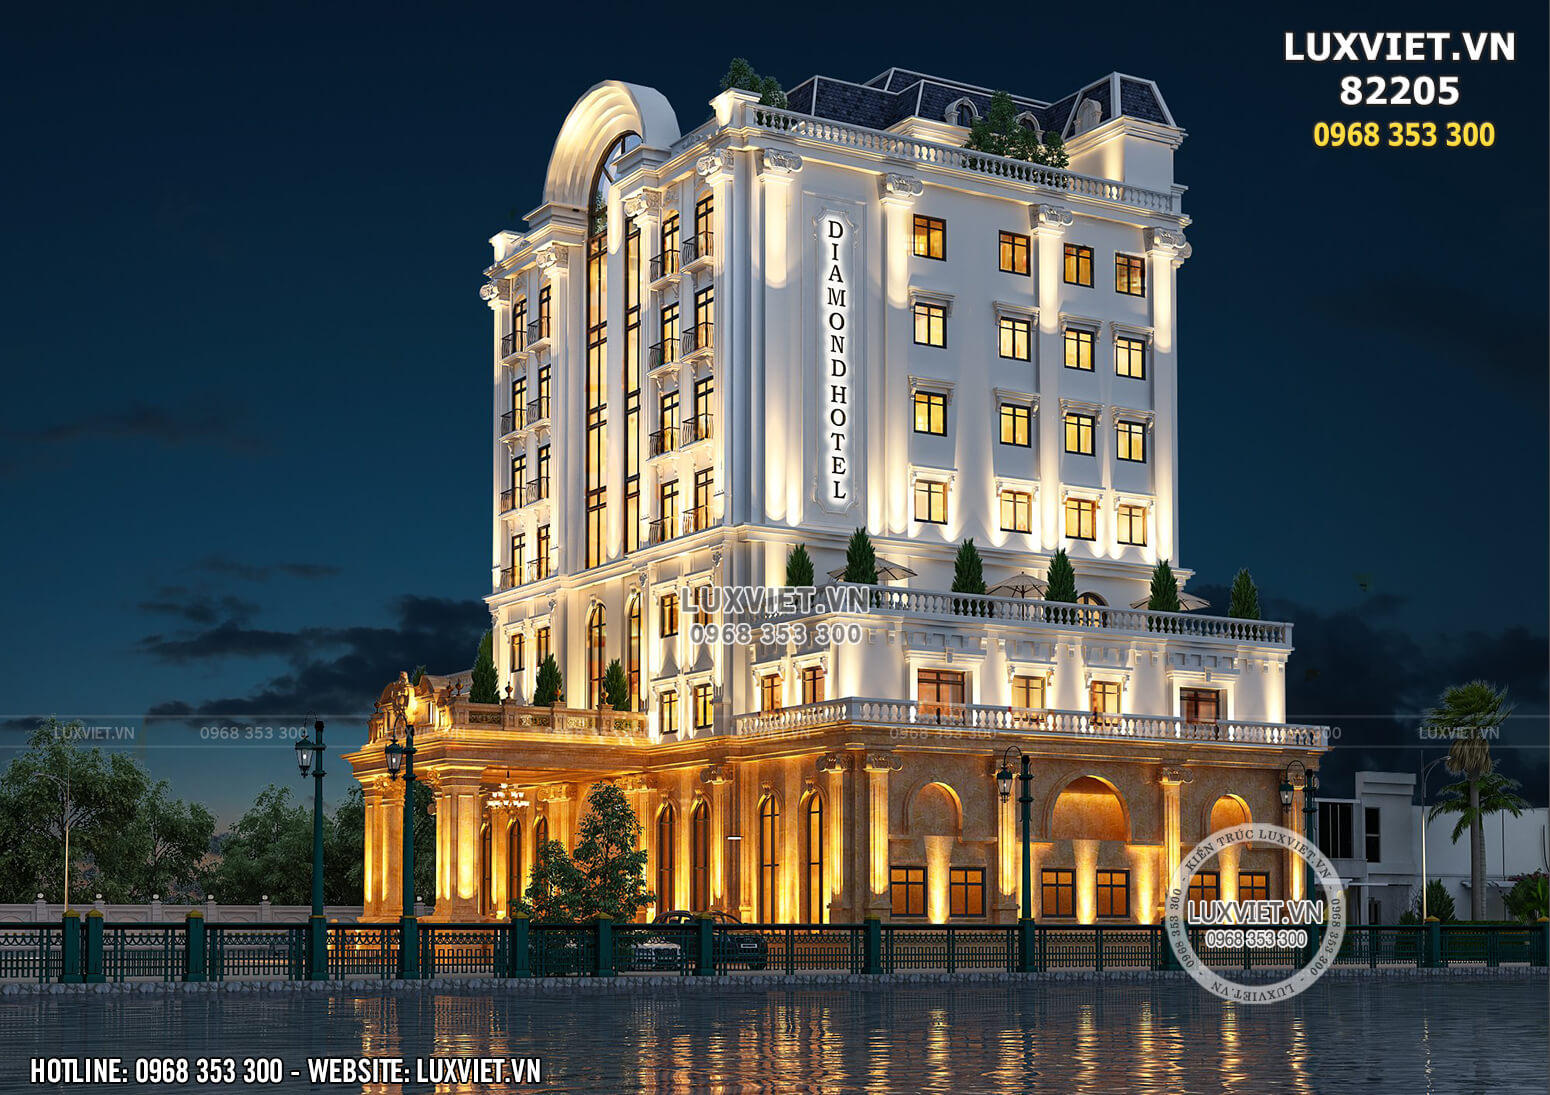 Hình ảnh: Thiết kế kiến trúc và nội thất khách sạn Diamond Quảng Ninh - LV 82205